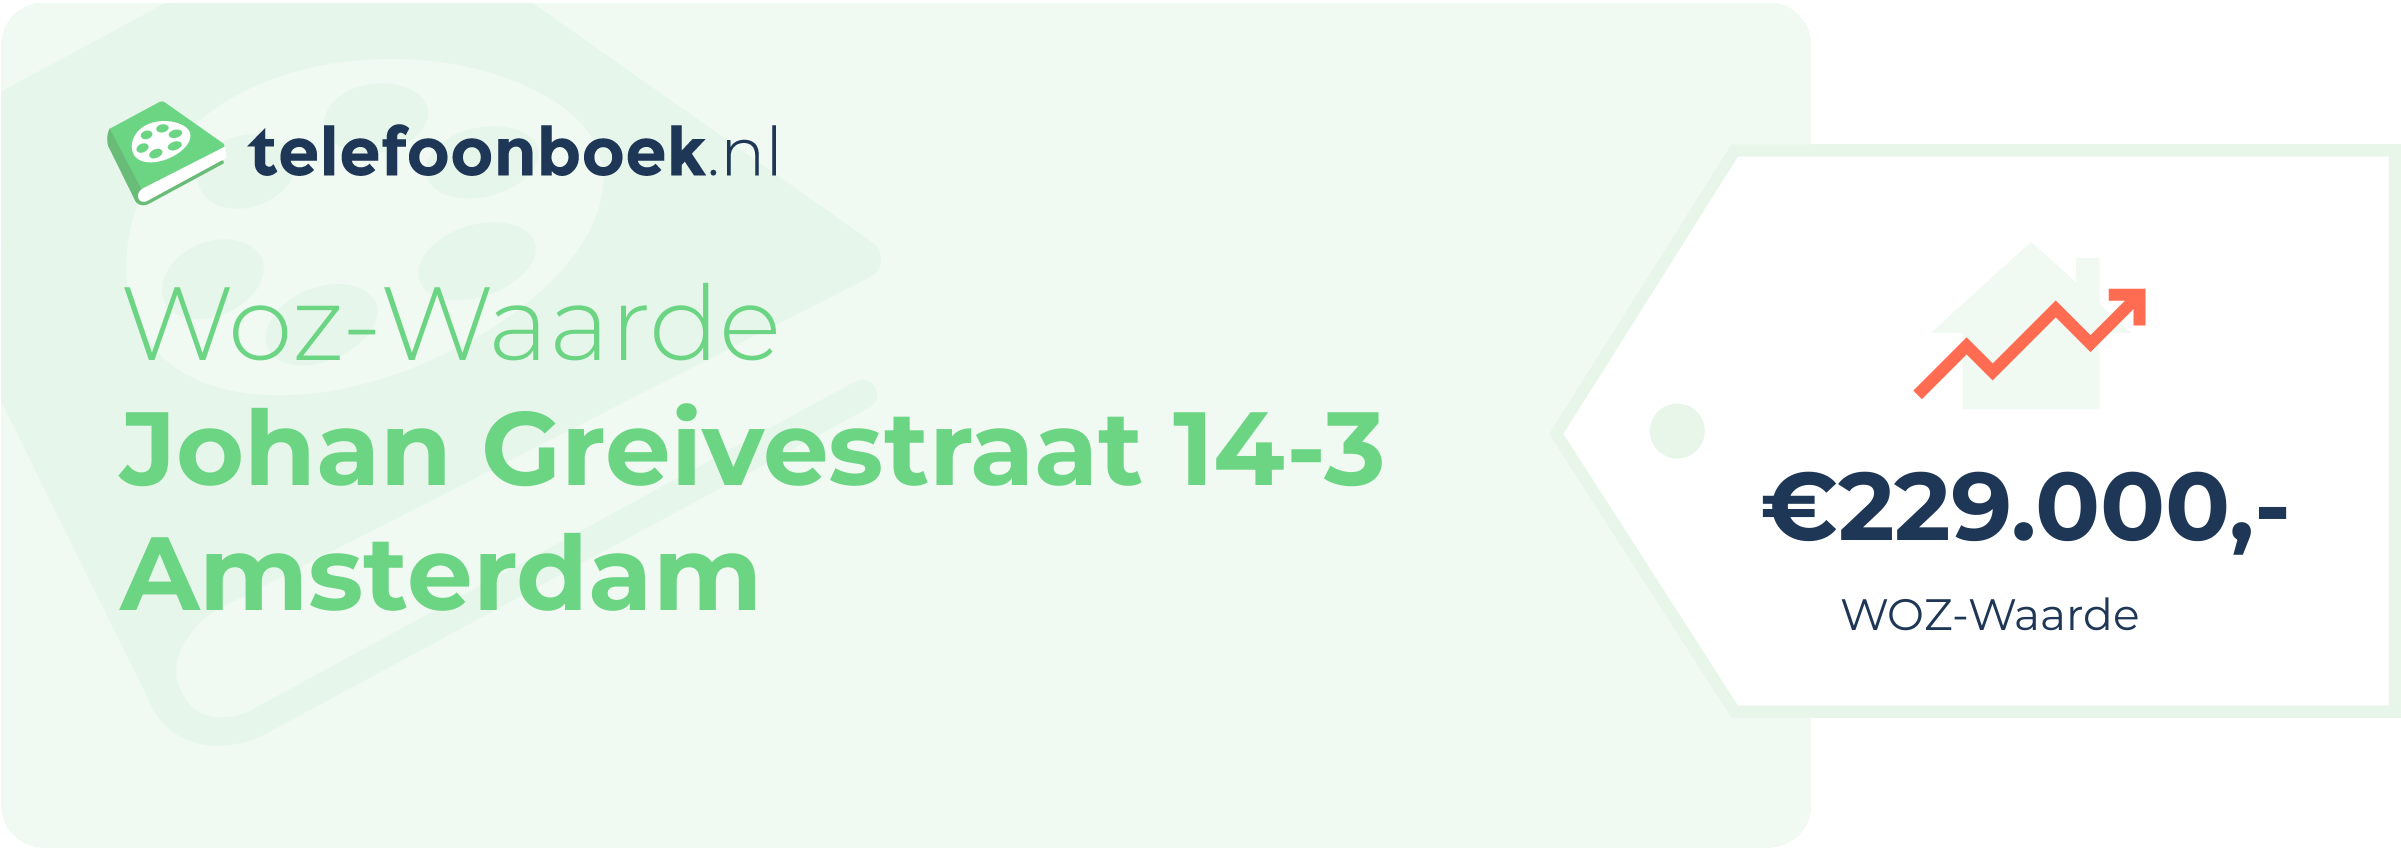 WOZ-waarde Johan Greivestraat 14-3 Amsterdam